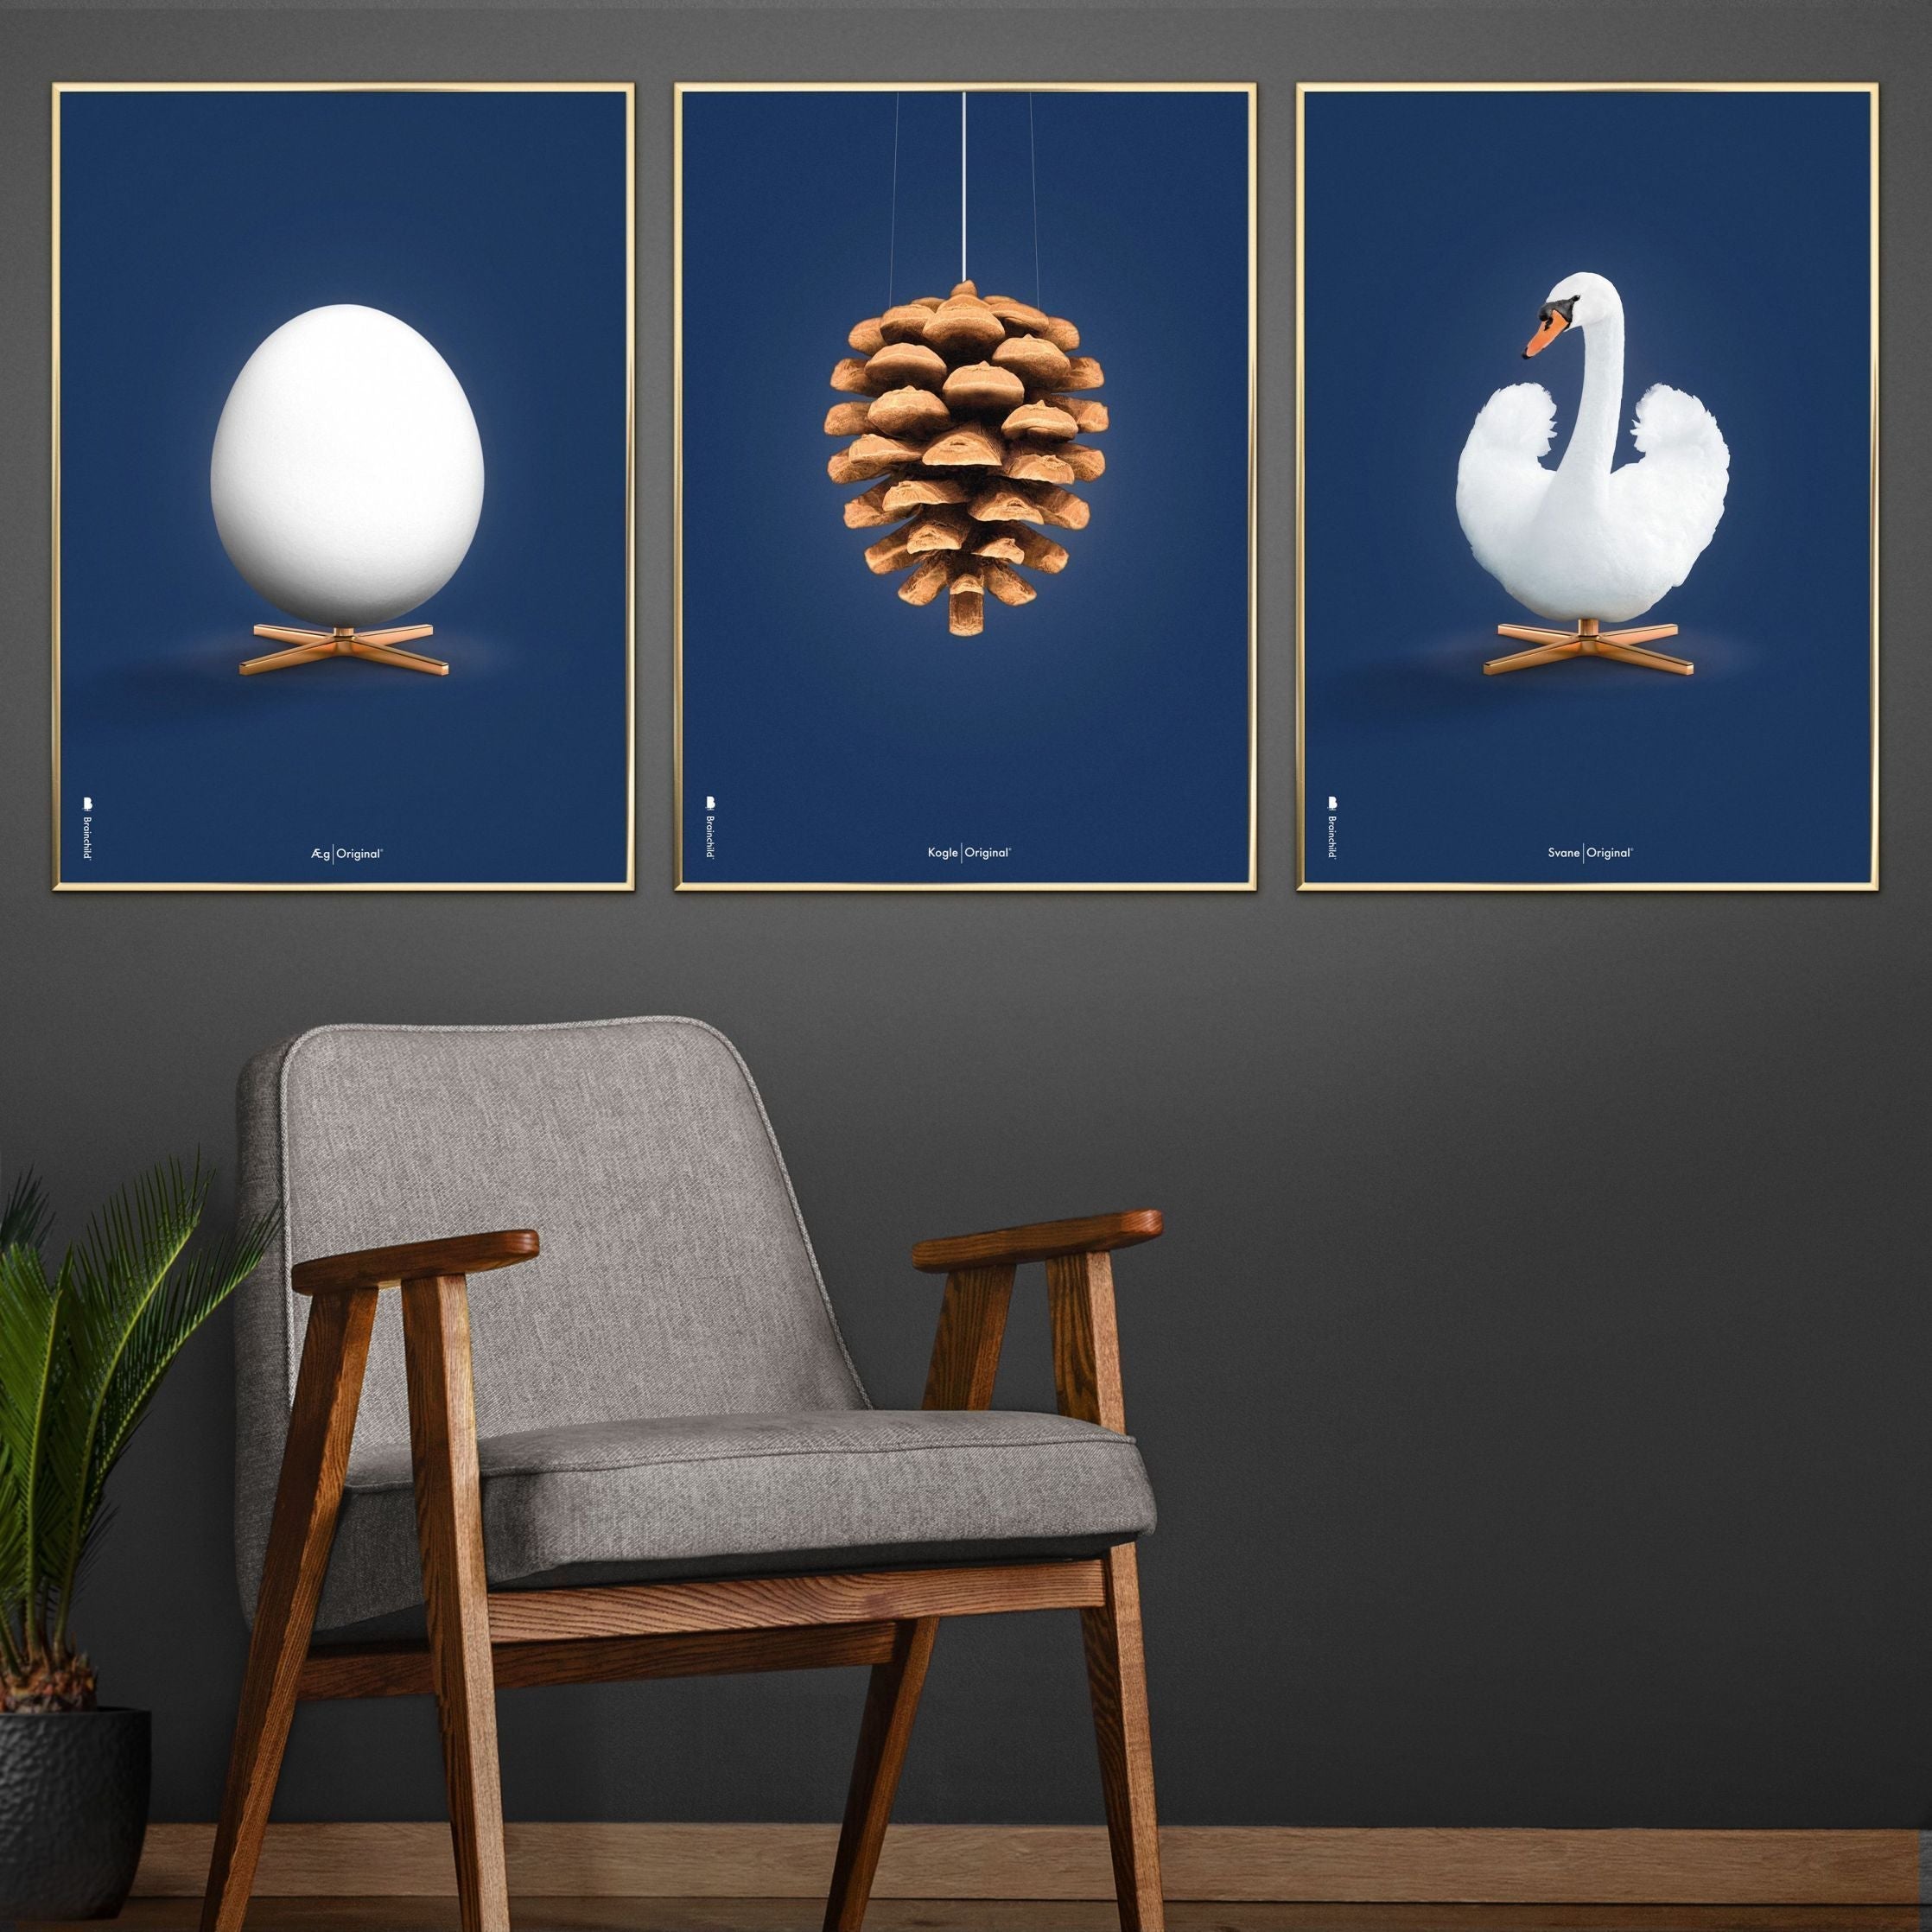 Brainchild Swan Classic Poster, Frame Made of Light Wood 30x40 cm, mørkeblå bakgrunn